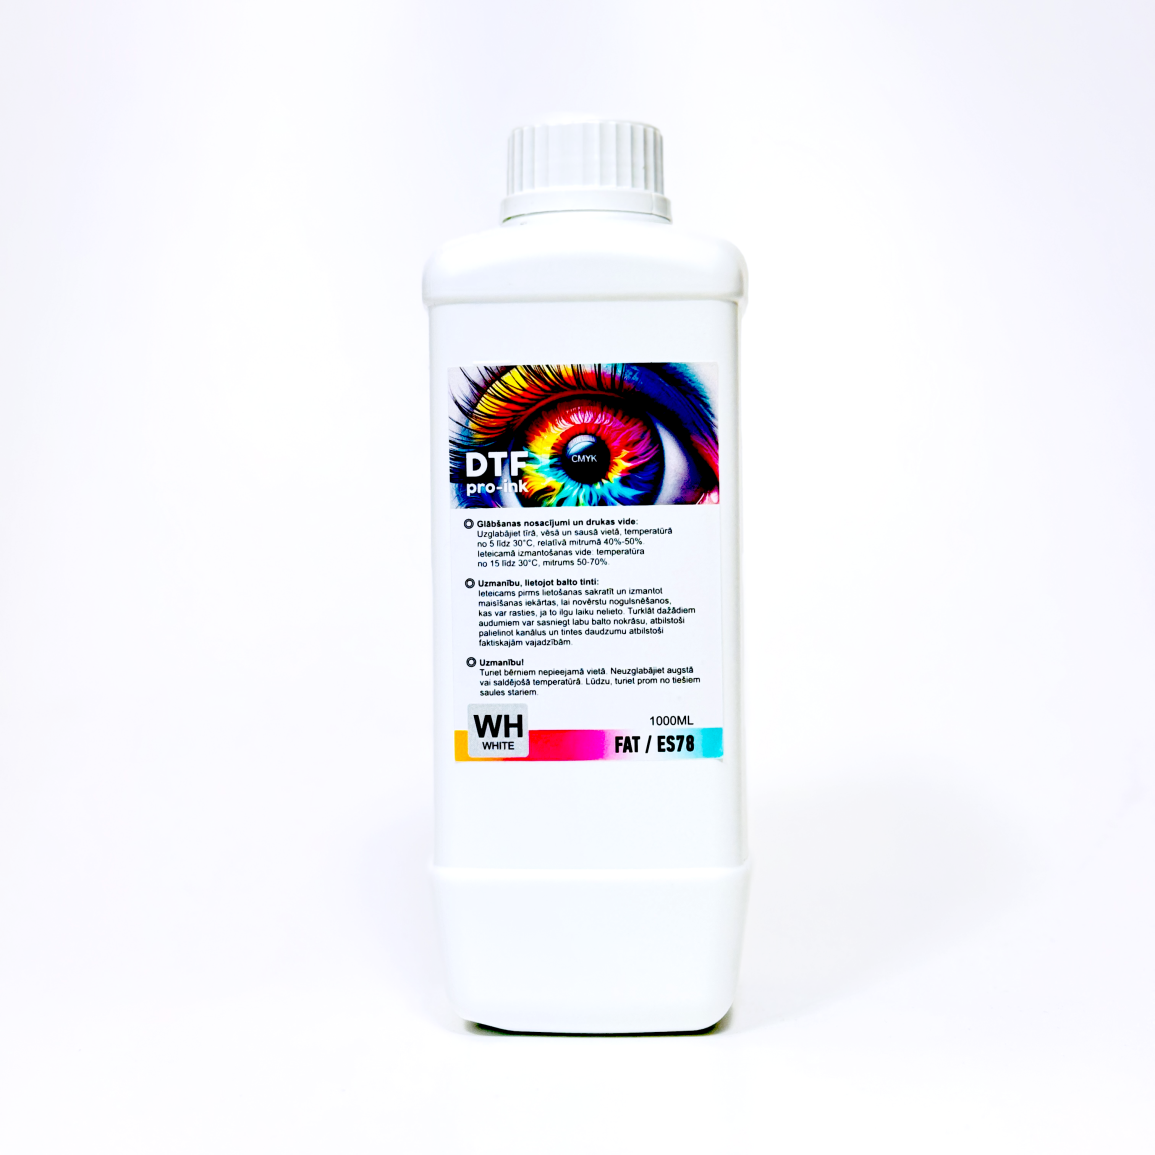 DTF krāsa viena litra pudelē 1L. WH balta DTF krāsa. Balta necaurspīdīga pudele, droša prret gaismas iedarbību uz tintes pigmentu.